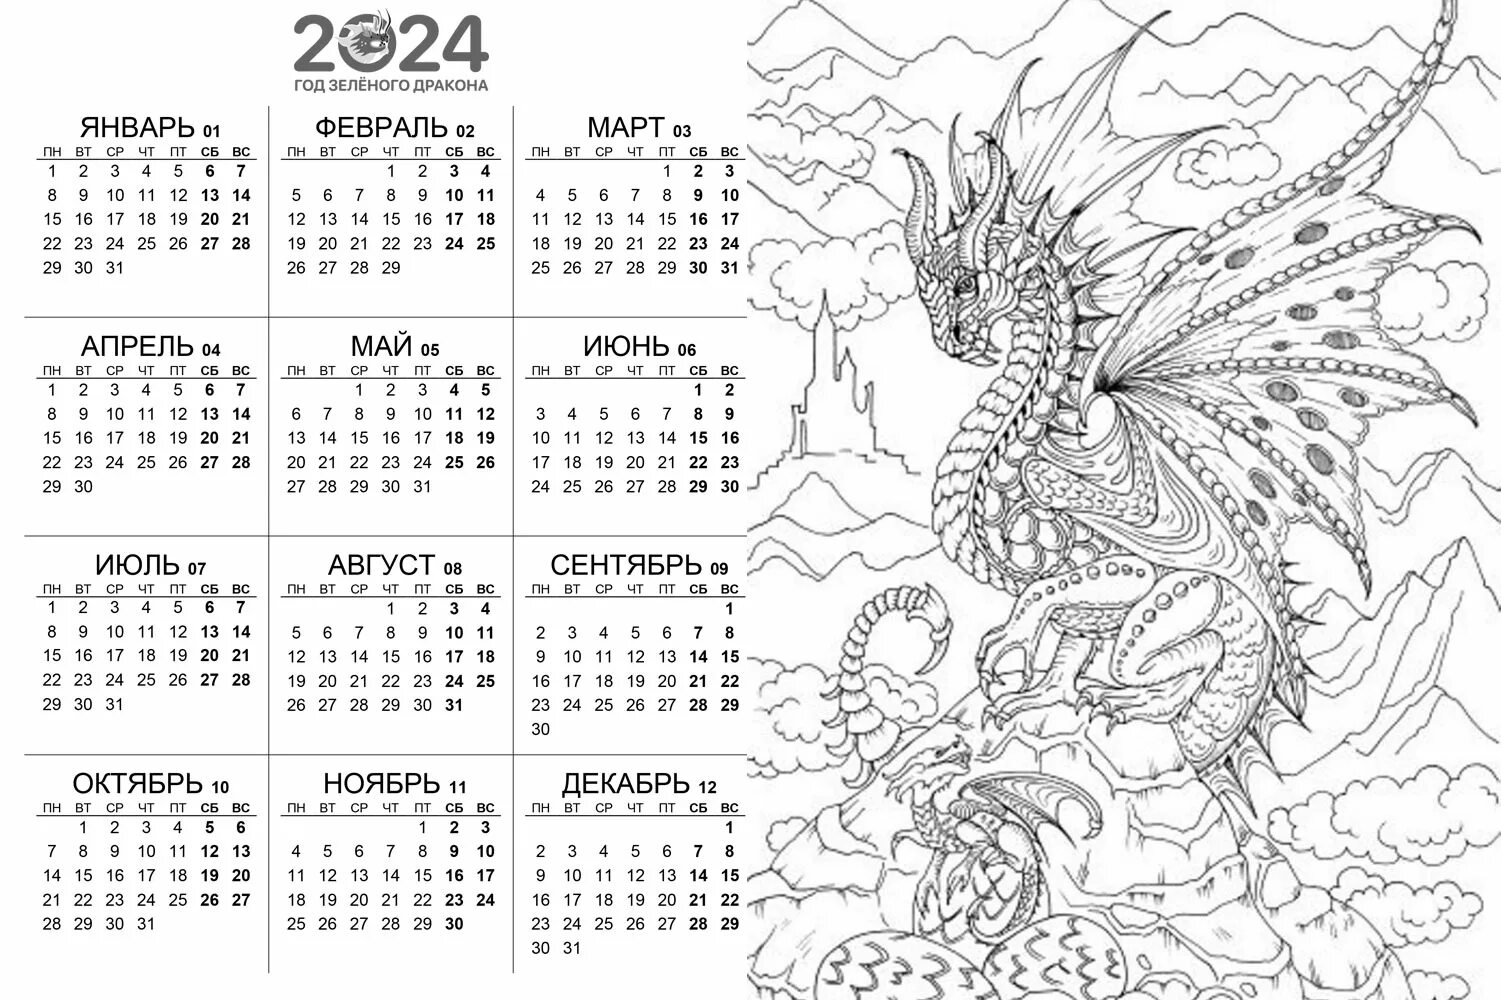 Восточный календарь год дракона 2024. Календарь год дракона. Календарь на 2024 год. Год дракона раскраска. Раскраска календарь 2024 года.